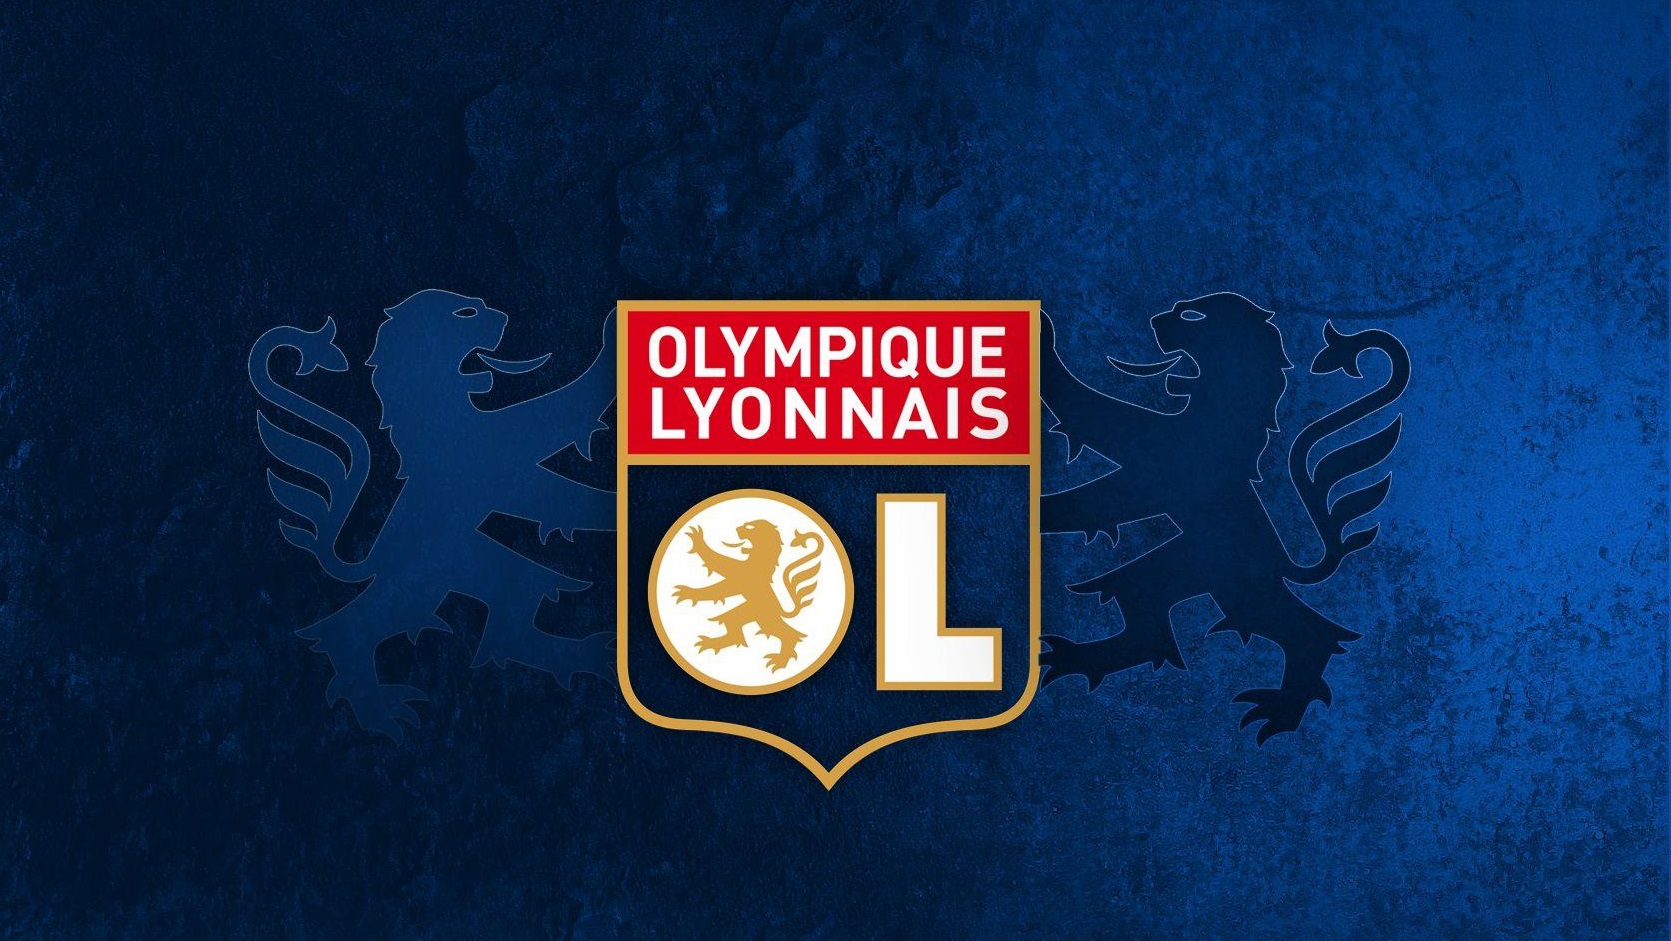 فرانسه-لوگوی المپیک لیون-OL